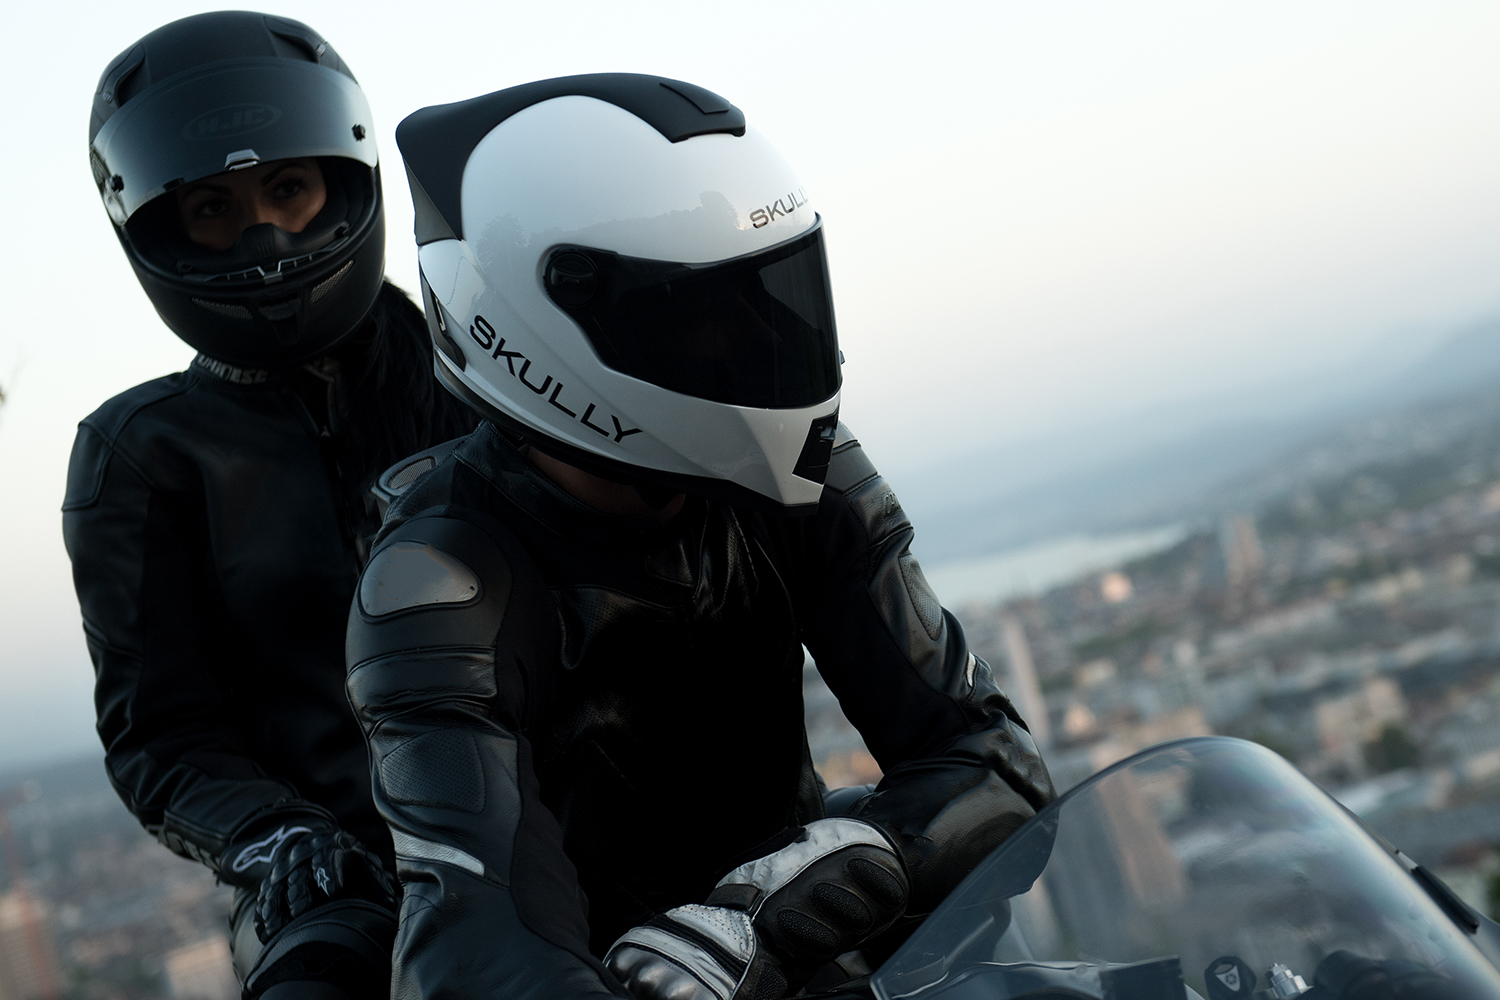 Фото мотоциклистов в шлемах с мотоциклом